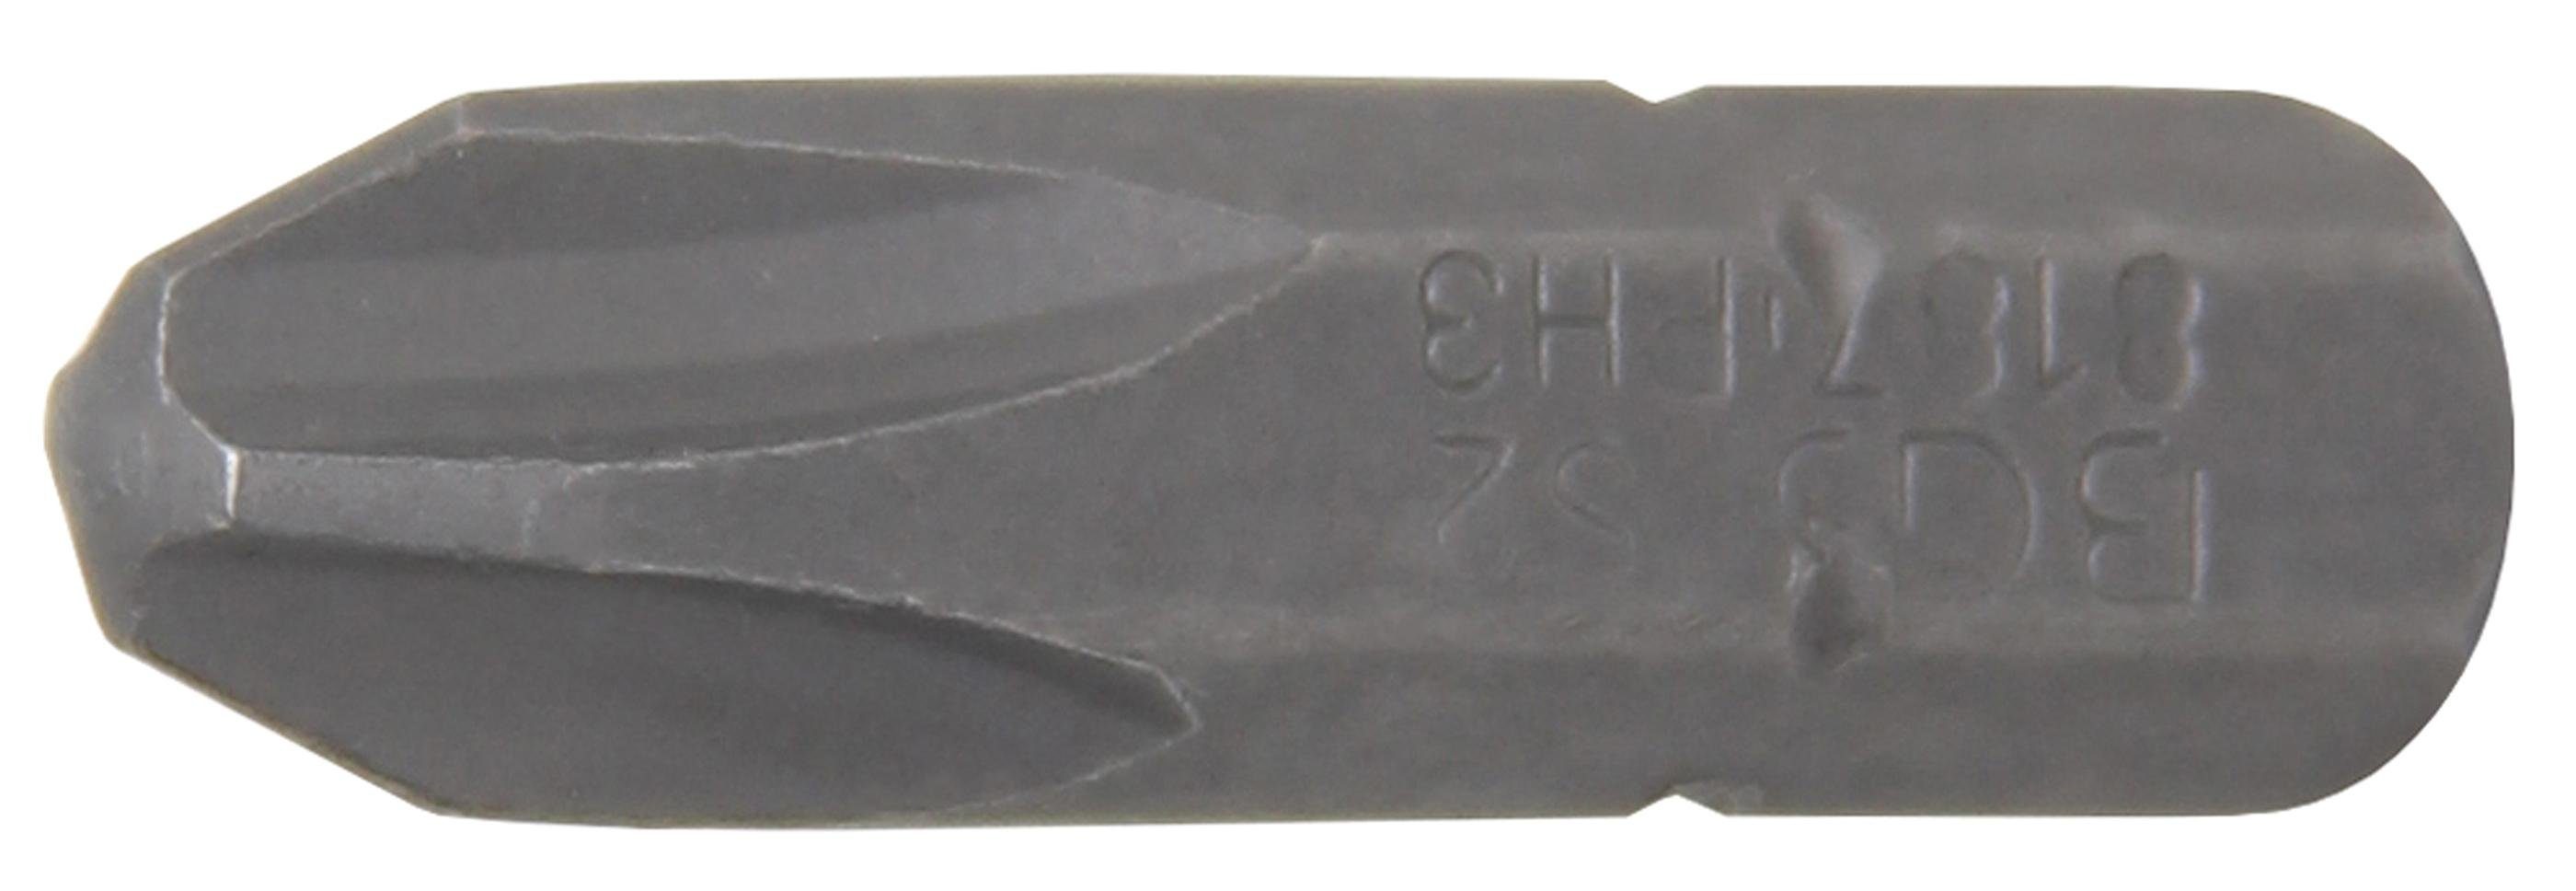 BGS technic Bit-Schraubendreher Bit, Antrieb Außensechskant 6,3 mm (1/4), Kreuzschlitz PH3